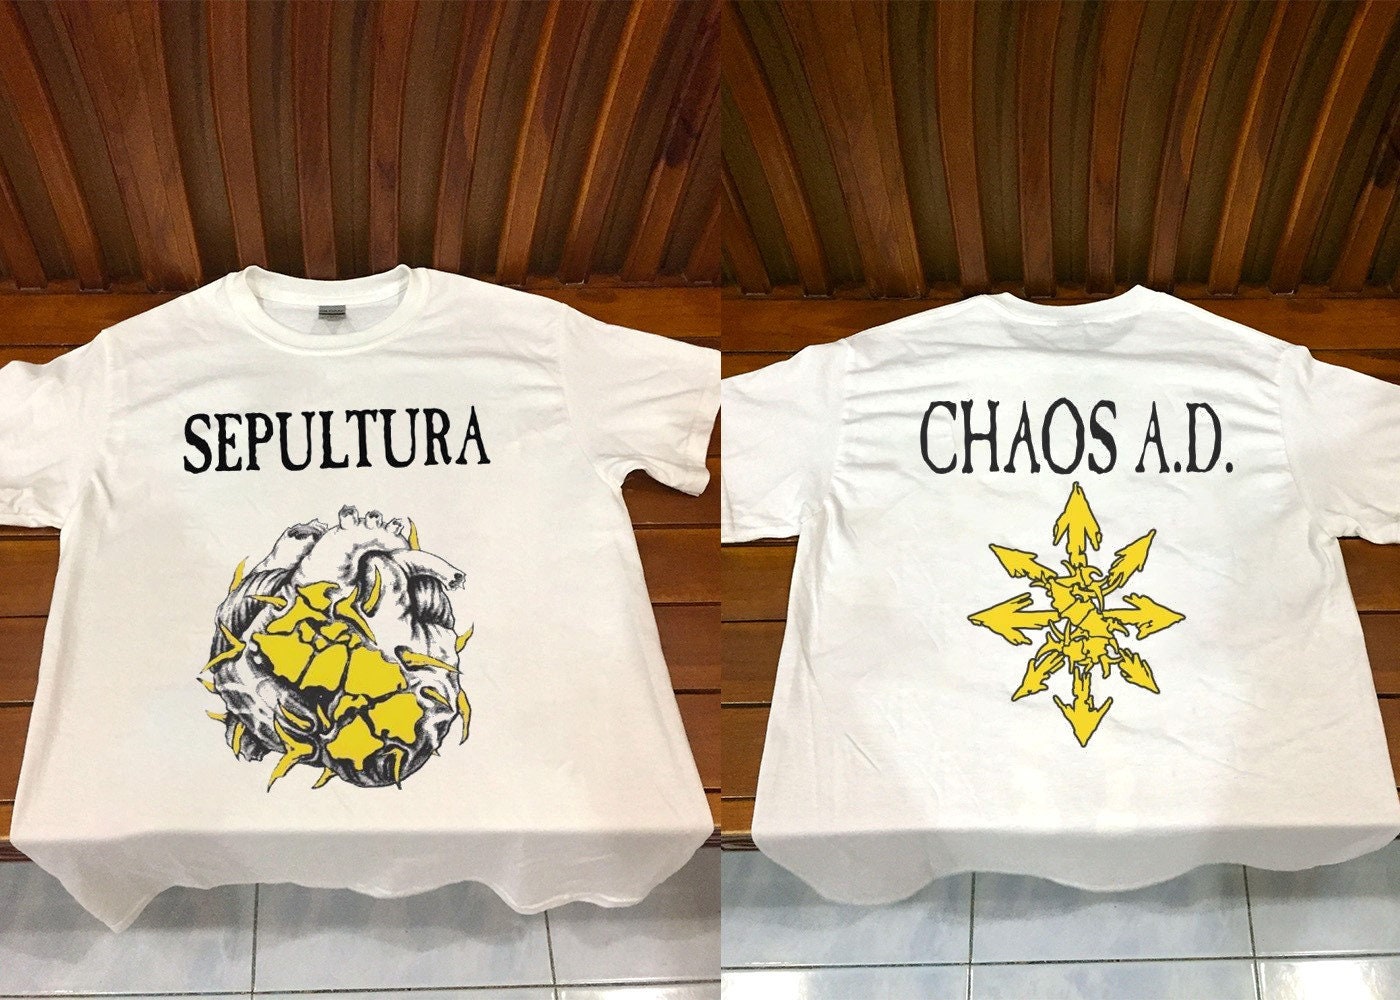 1993 SEPULTURA CHAOS A.D. Tour T-Shirt, Sepultura Tour 93 Shirt